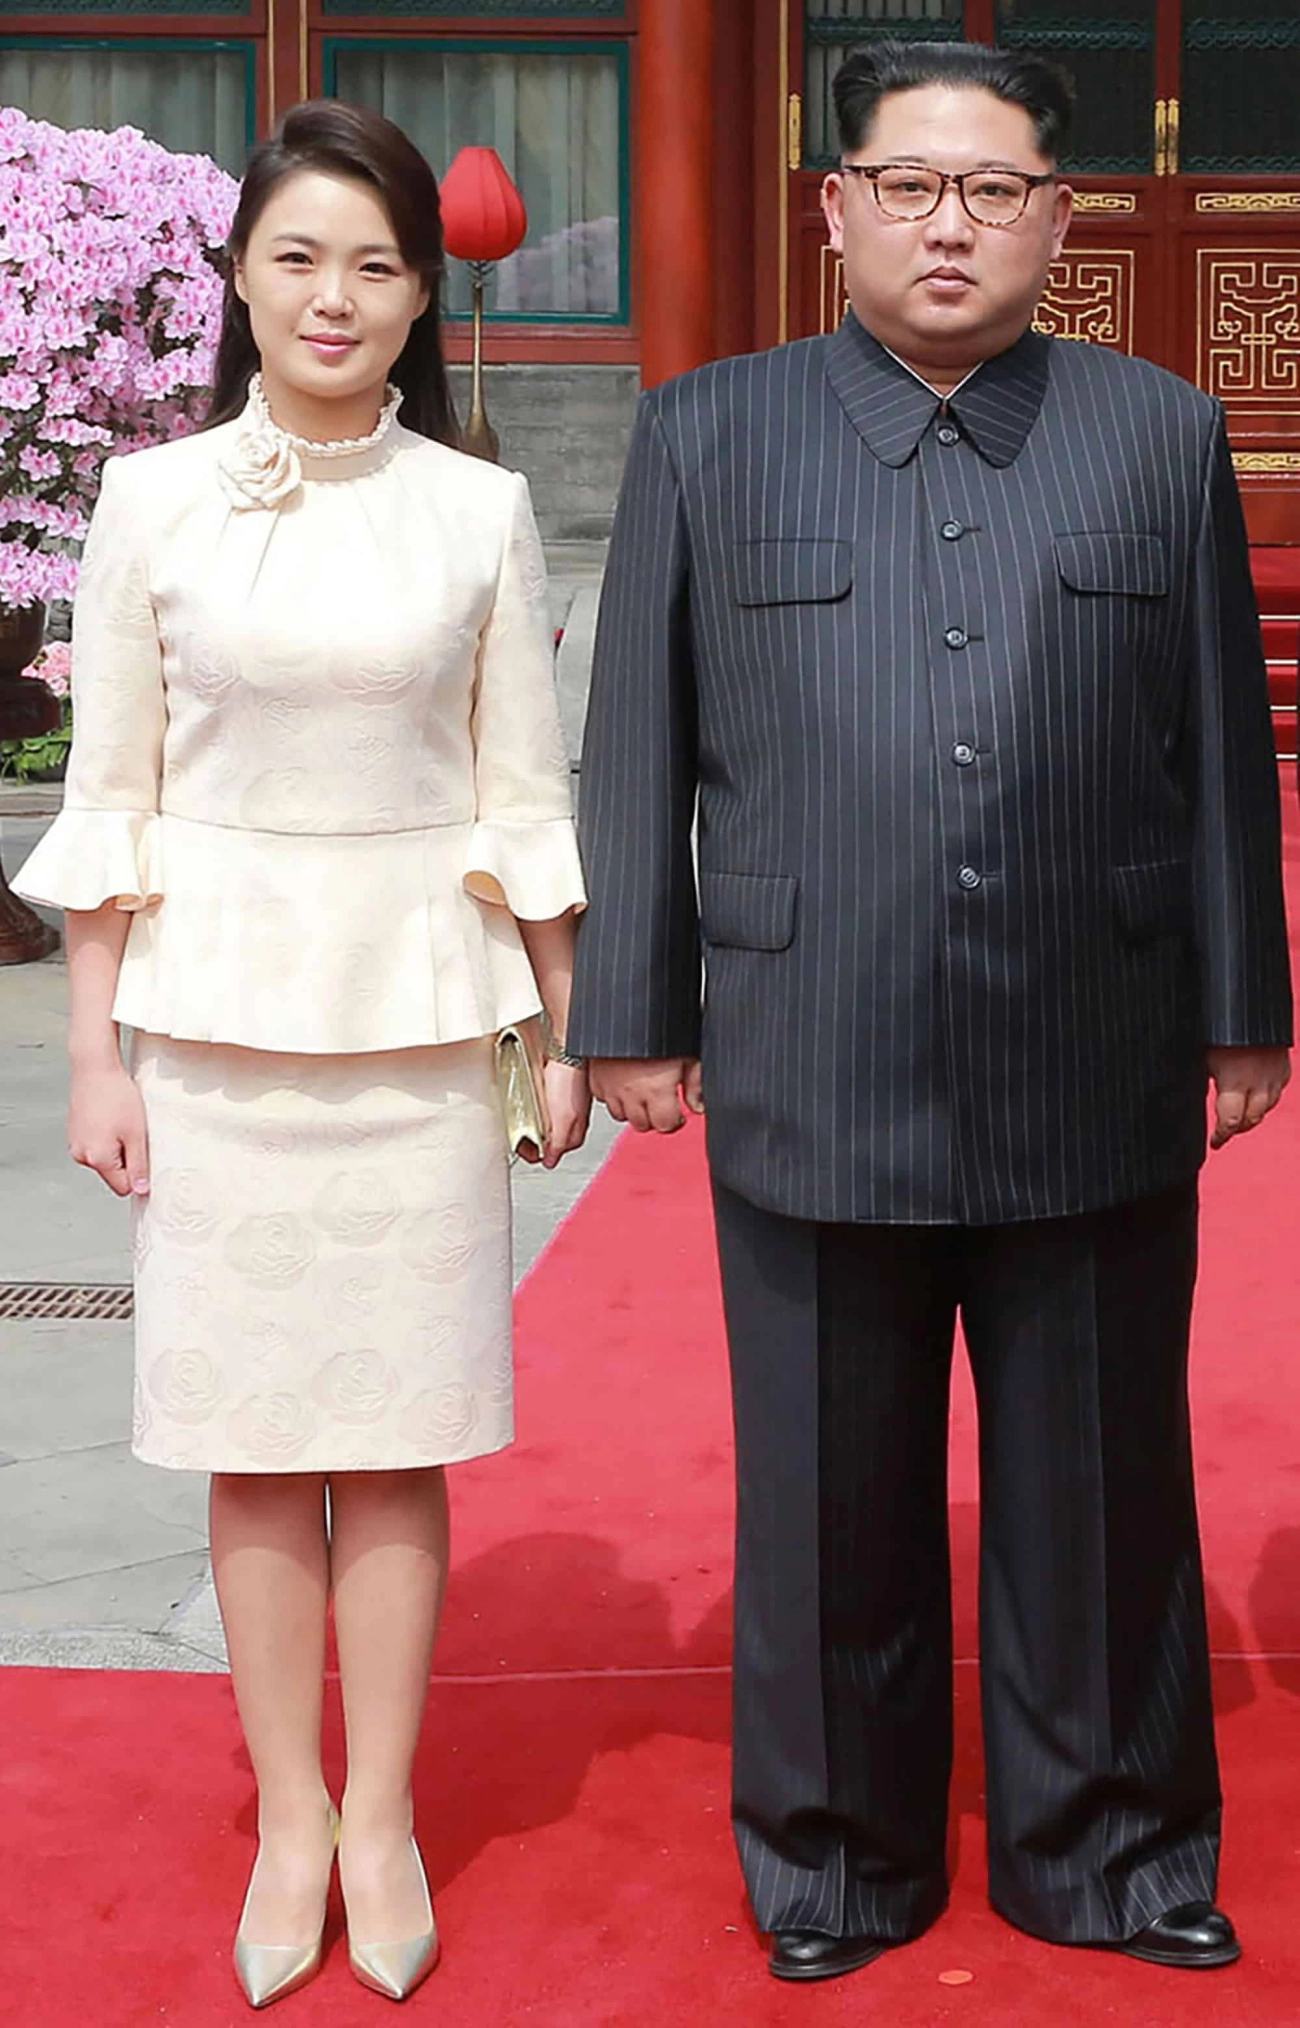 Nhan sắc nền nã bà xã chủ tịch kim jong-un chỉ mặc một kiểu đồ vẫn toát cốt cách - 5